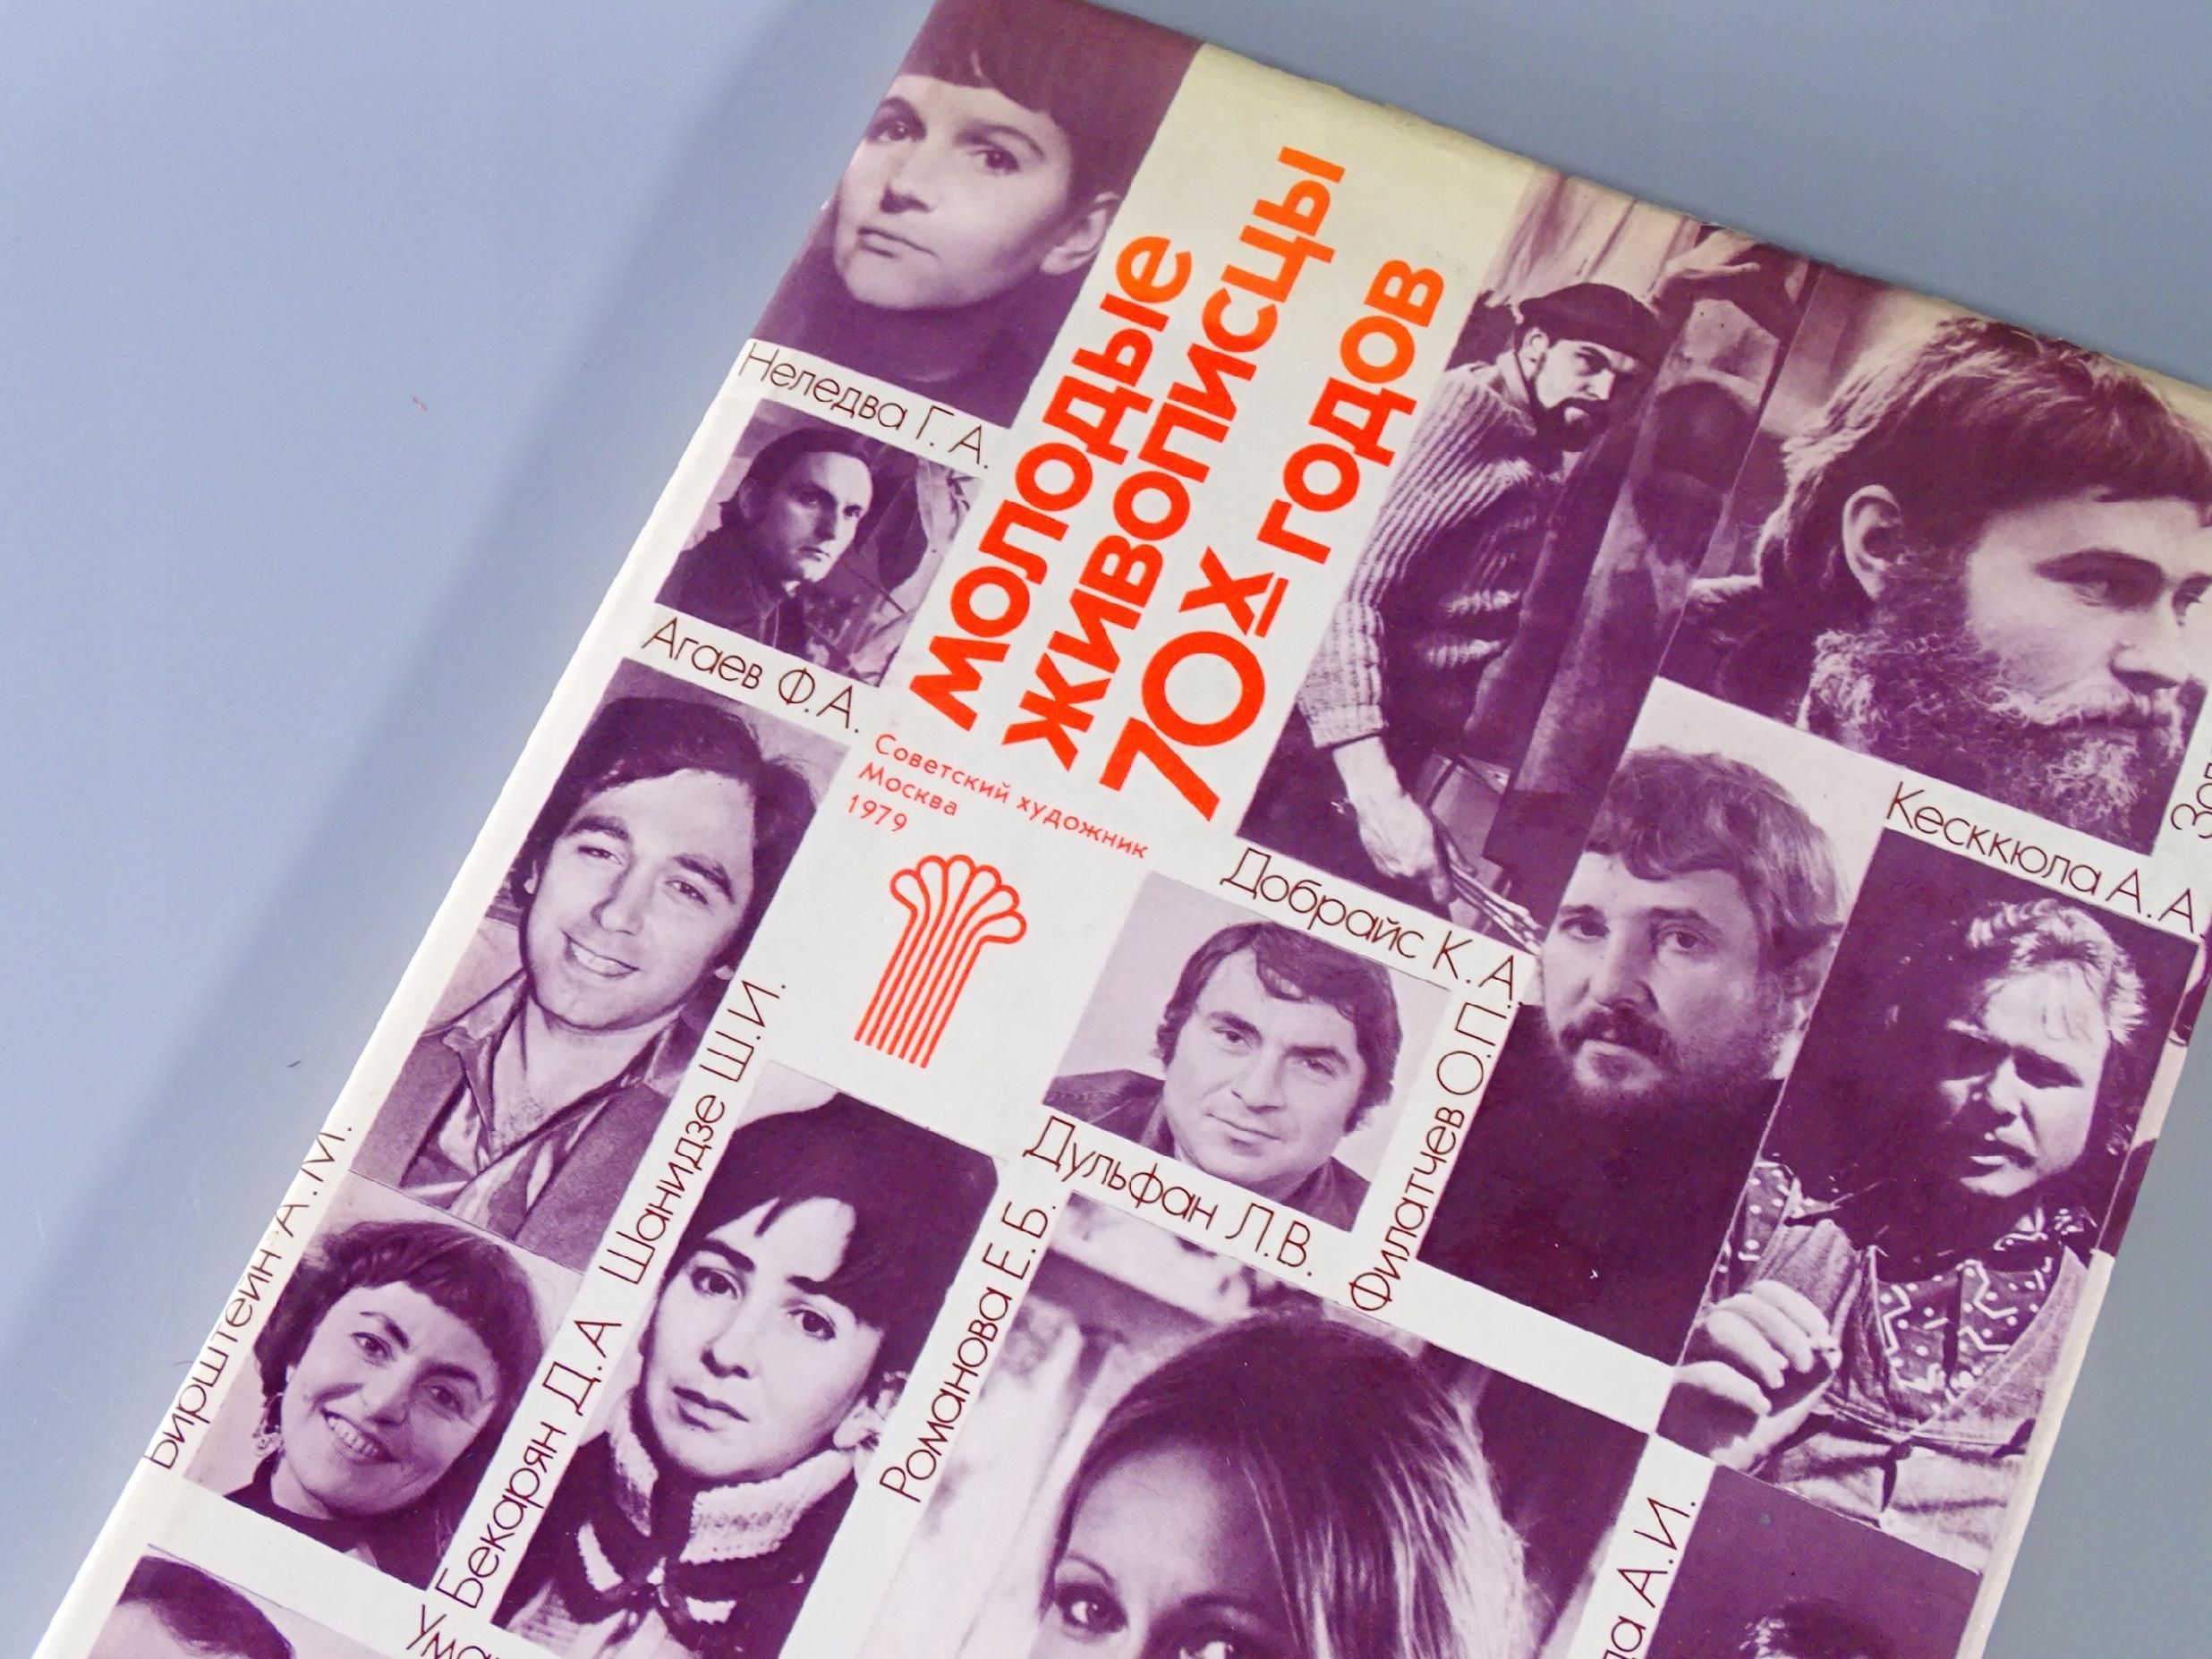 młodzi malarze radzieccy lat 70-tych album zsrr